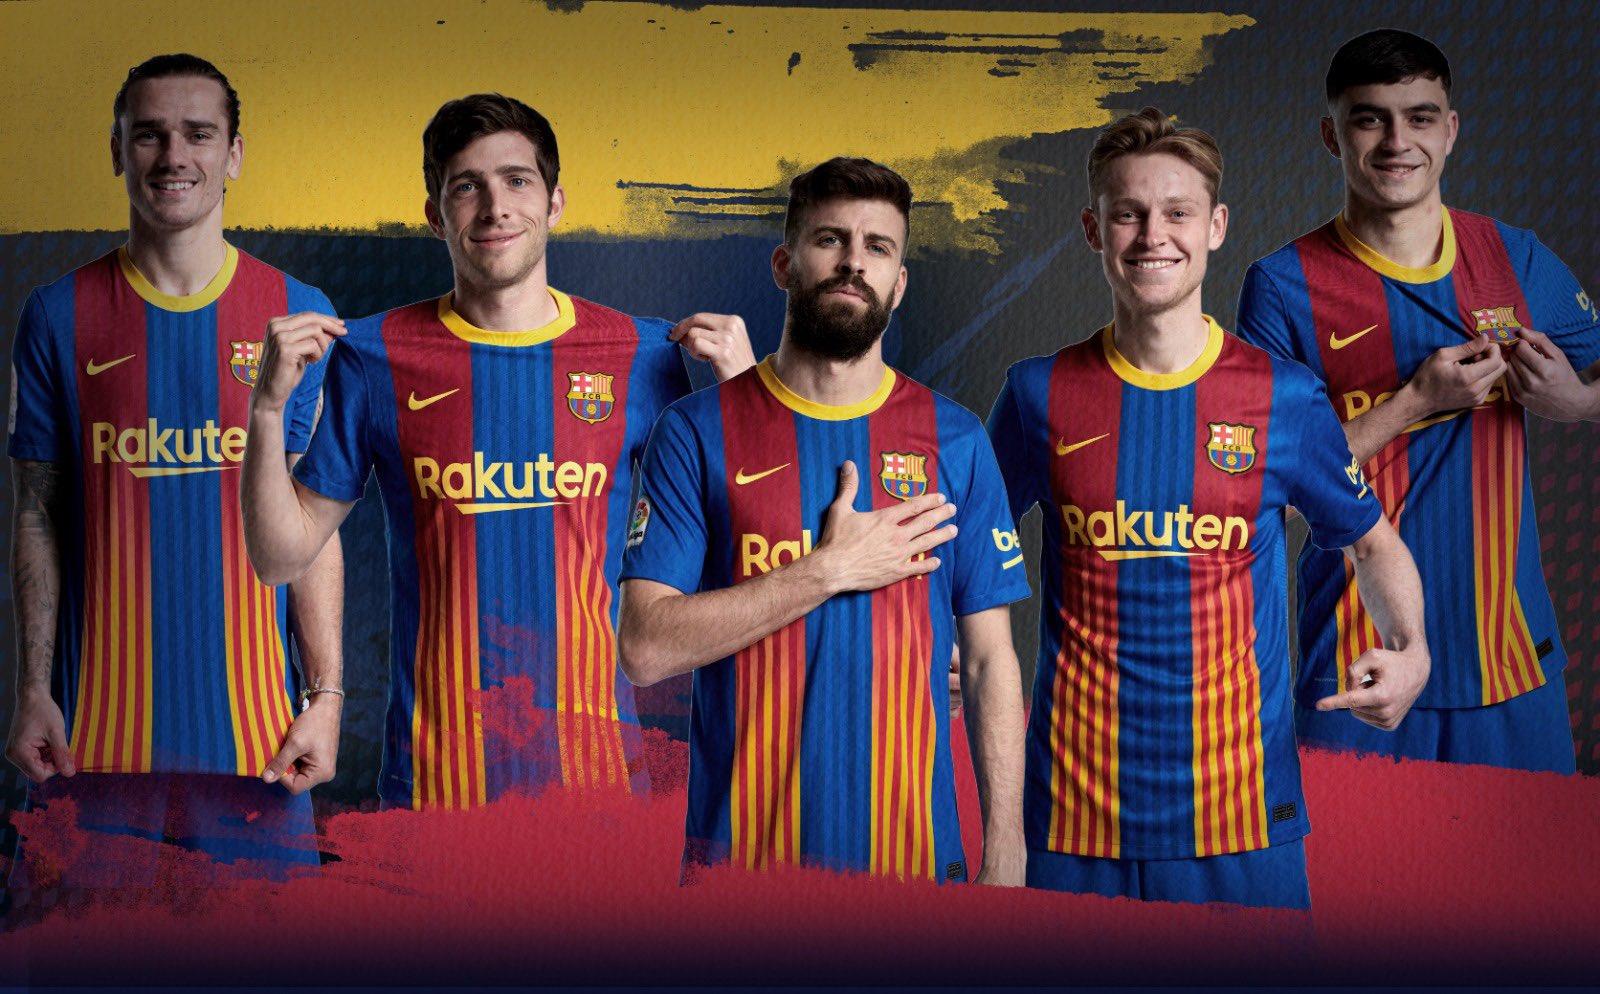 real madrid kit vs barcelona